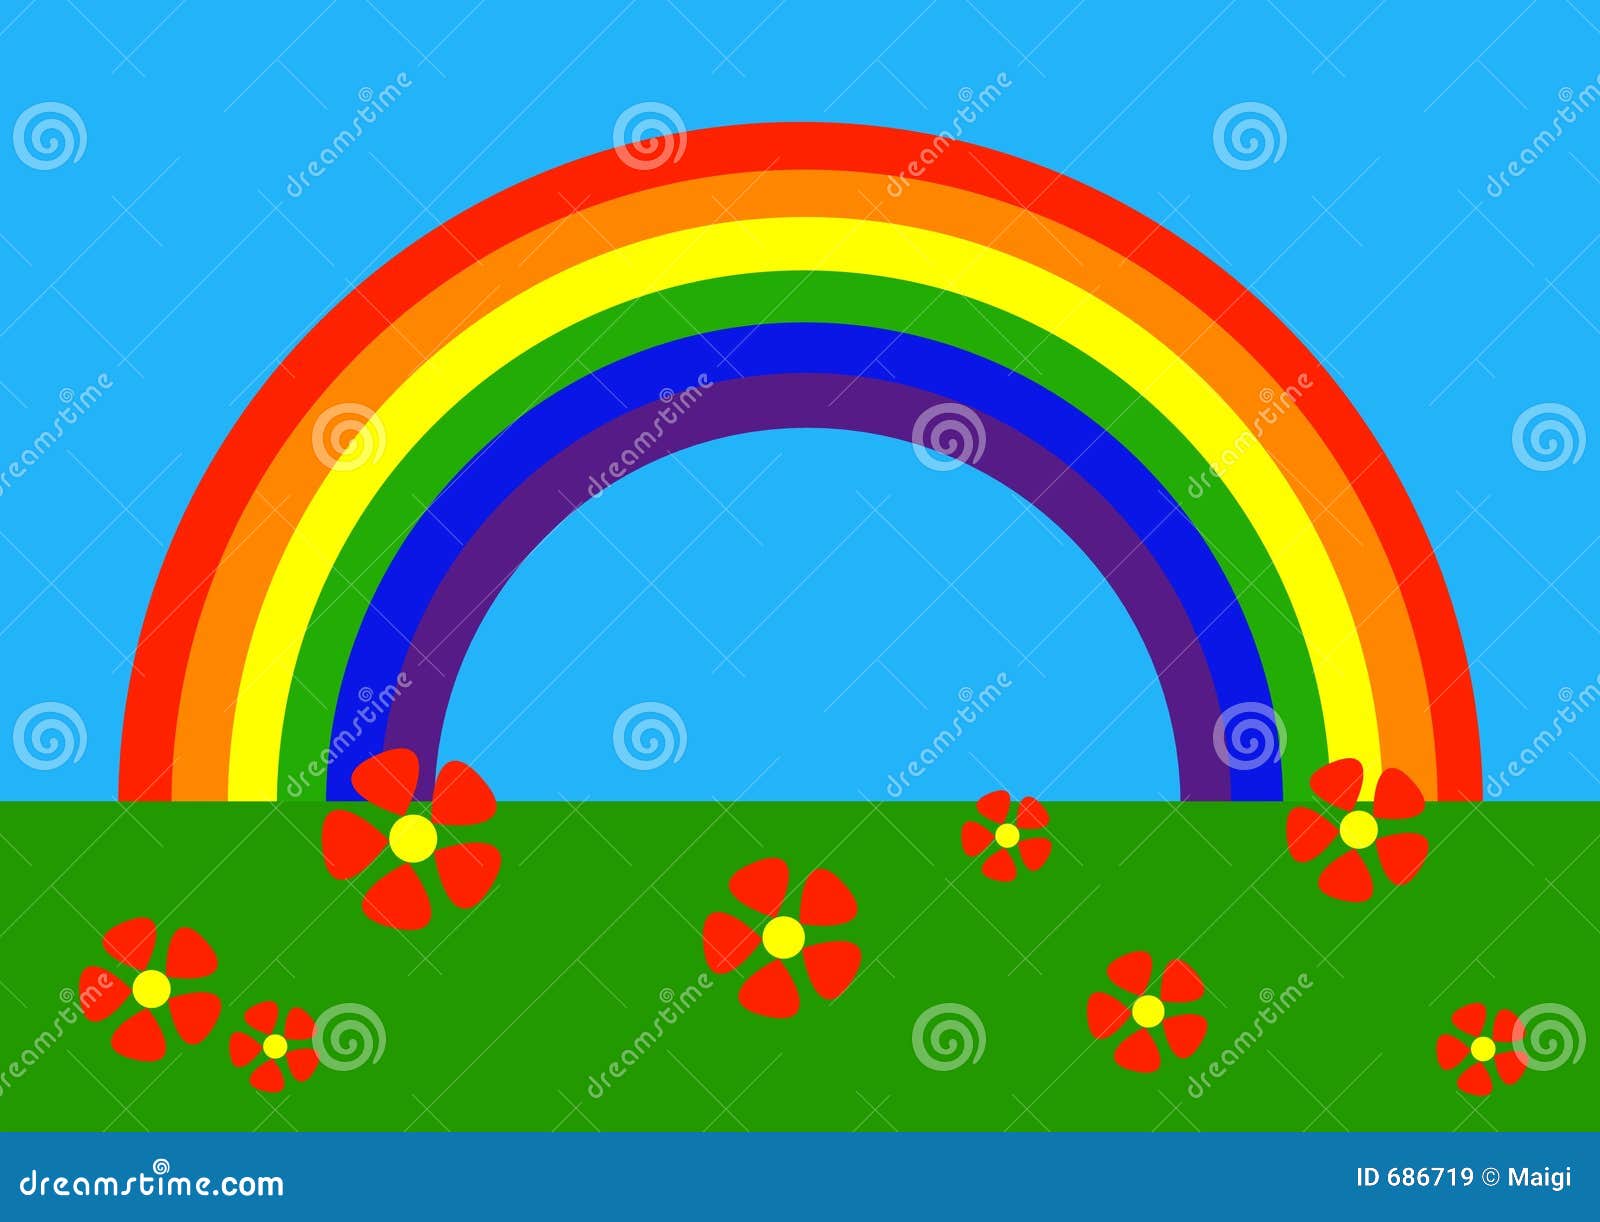 Featured image of post Imagens De Arco Iris Em Desenho - Aqui você encontra muitos desenhos de arco iris para colorir.